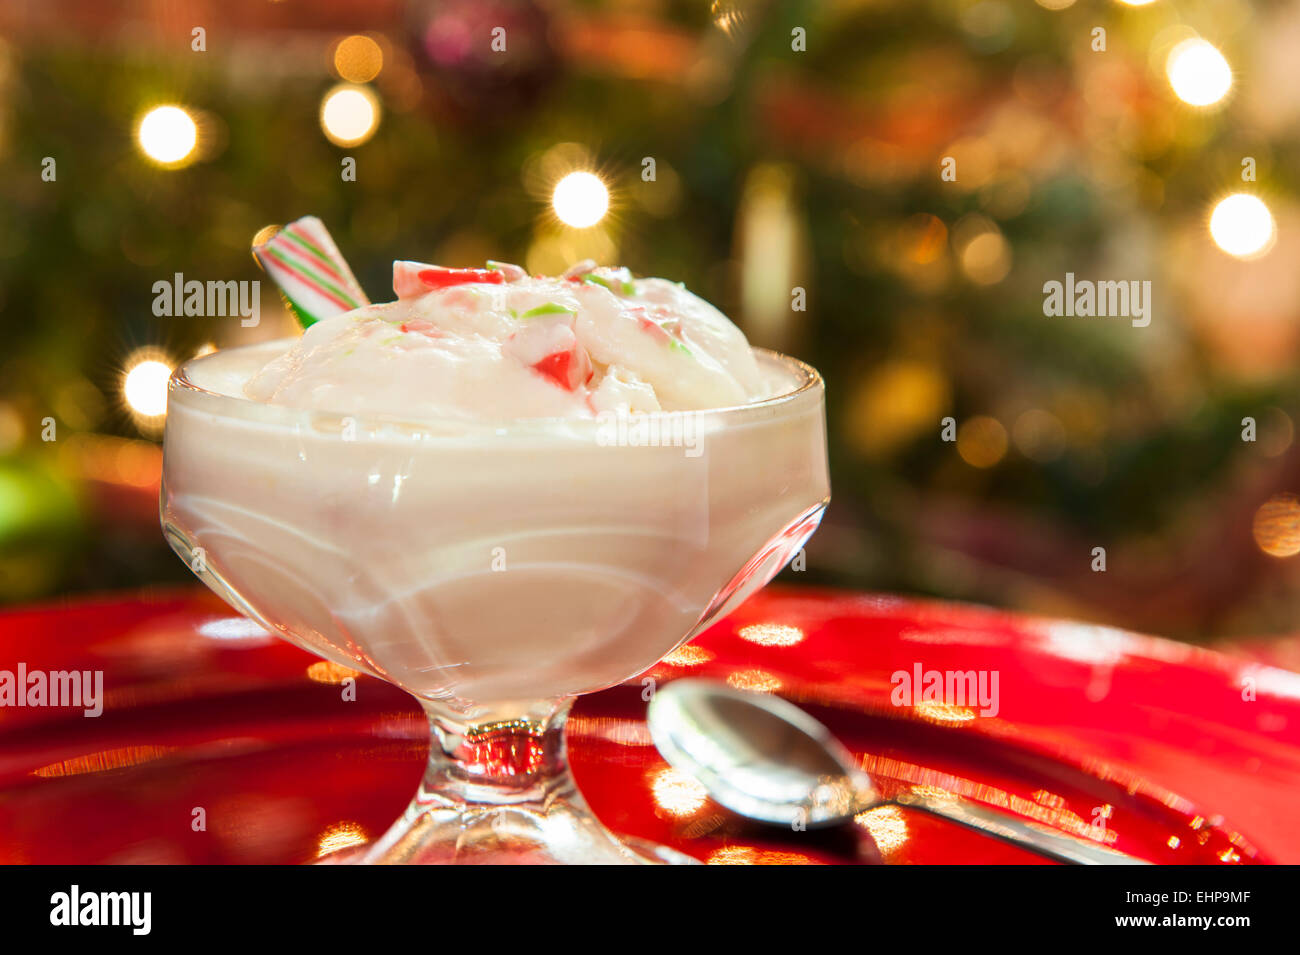 Plat de crème glace canne entouré par la splendeur de Noël Banque D'Images